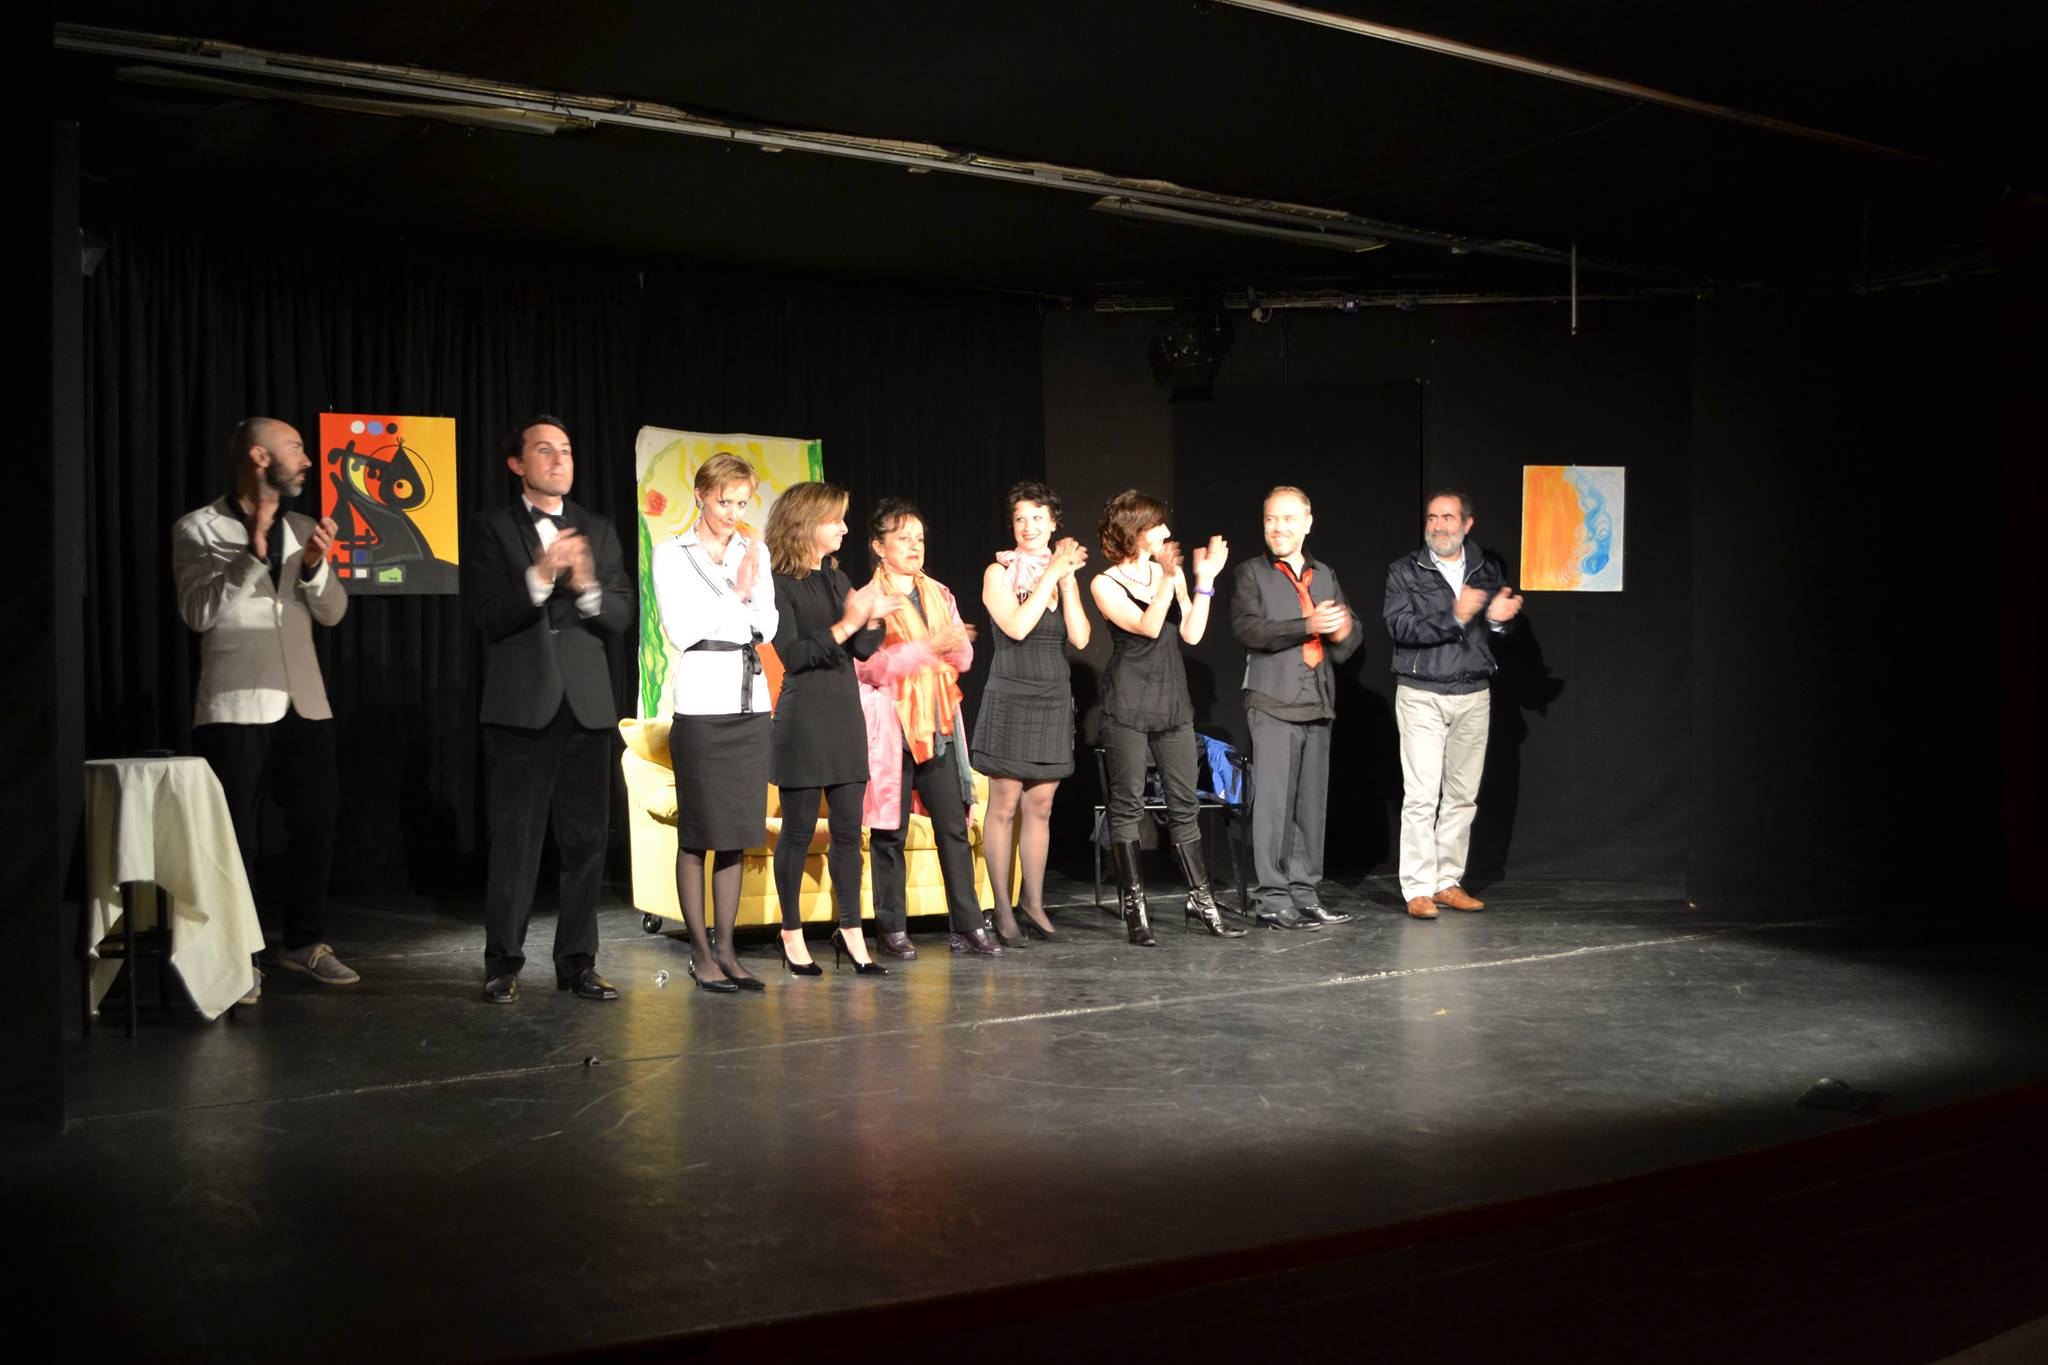 Spettacolo teatrale Ponteranica 2013. Scenografia allestita utilizzando i quadri di Donatella Lotti